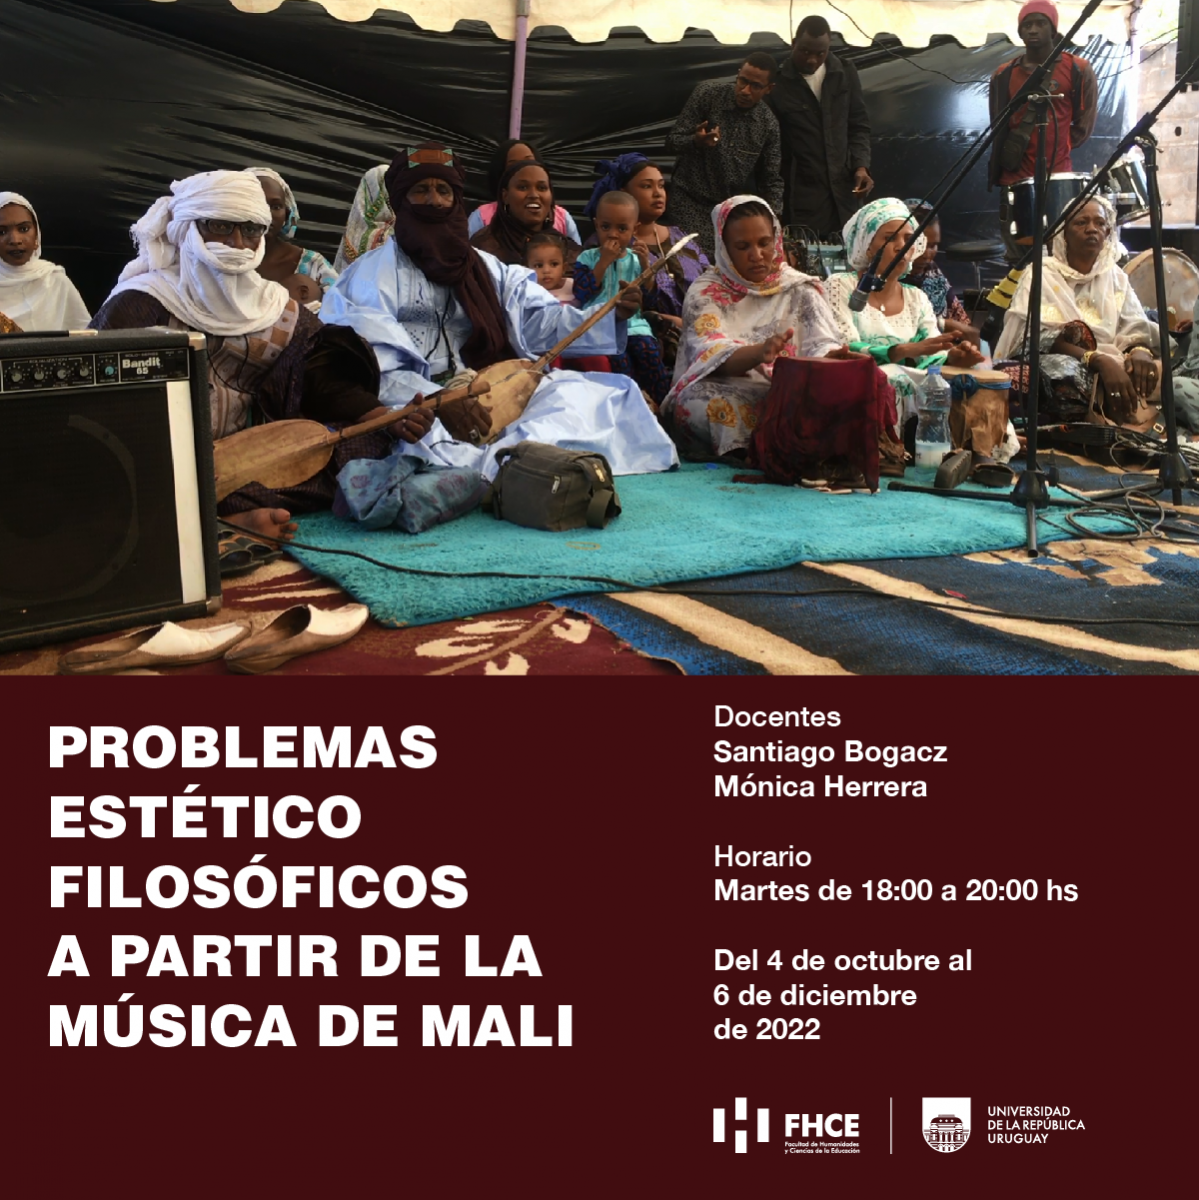 Imagen de difusión del curso de EP con texto sobre impreso: Problemas estético filosófico a partir de la música de Mali